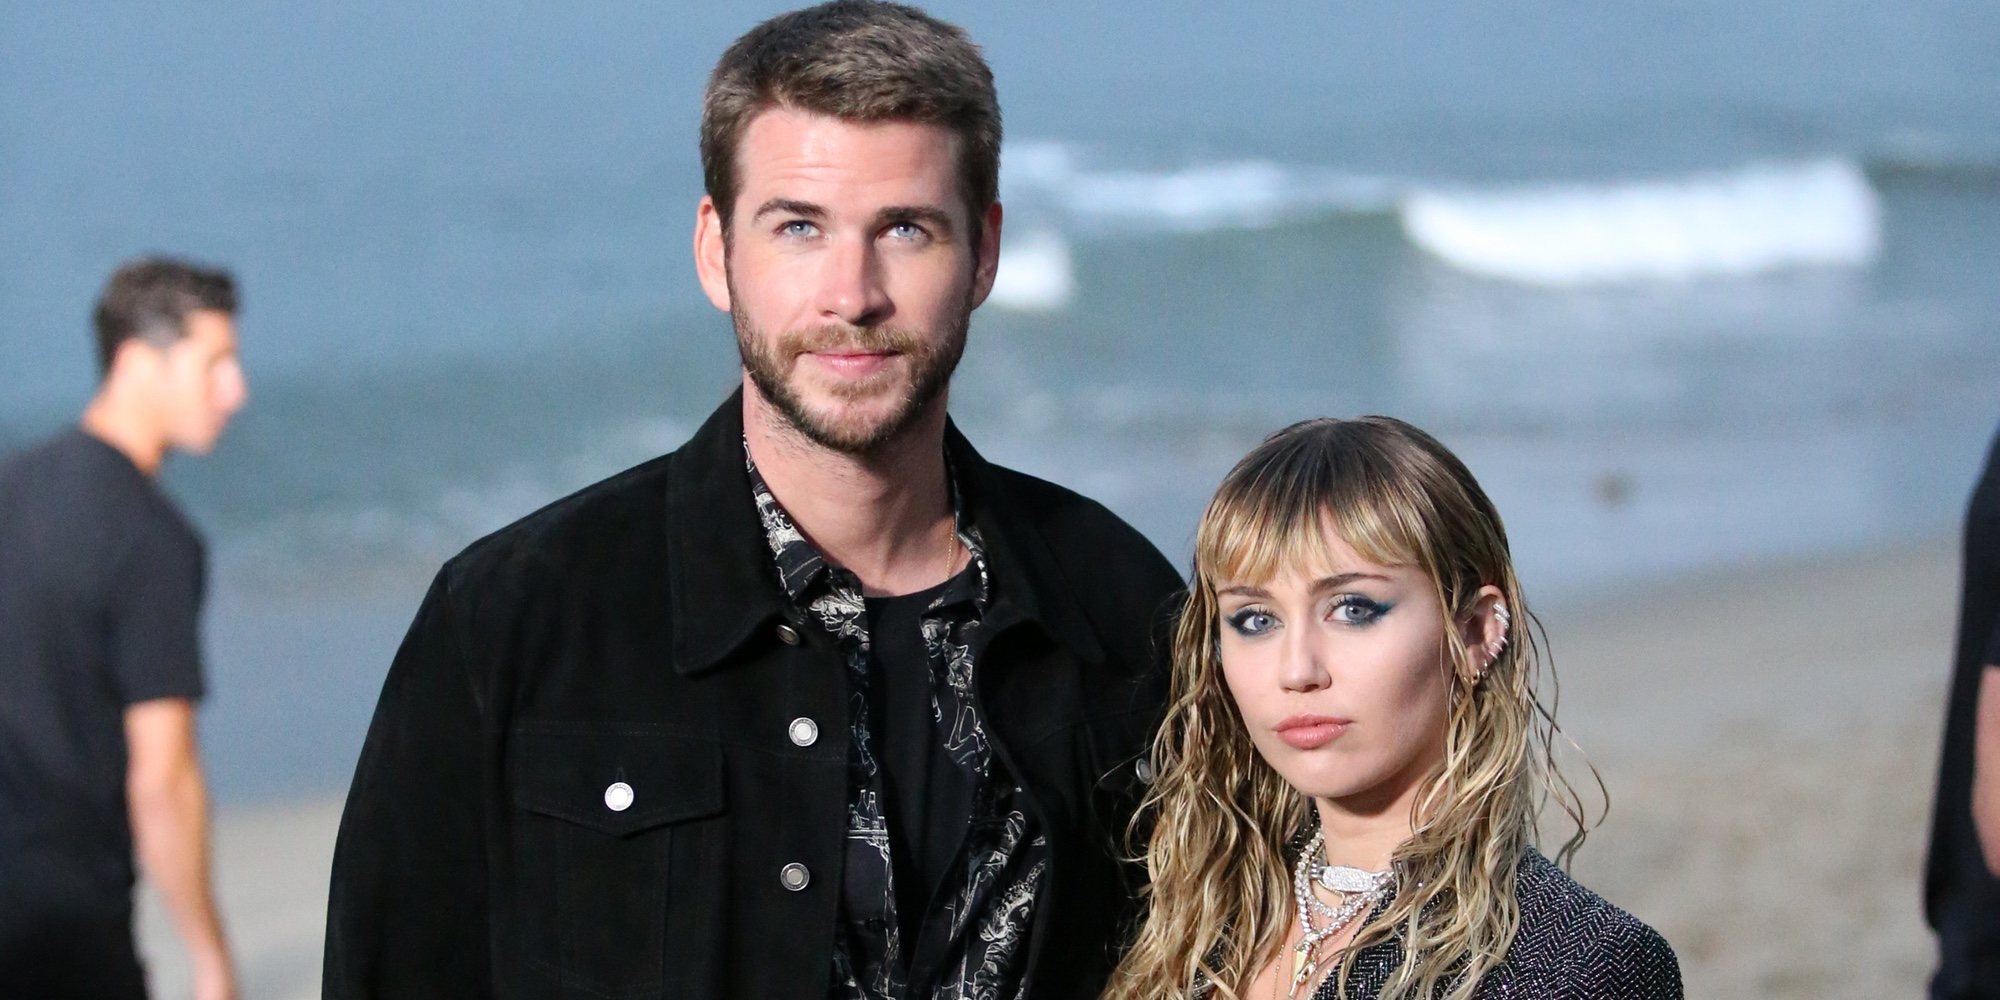 Las infidelidades, las drogas y el alcohol podrían ser las razones del divorcio de Miley Cyrus y Liam Hemsworth